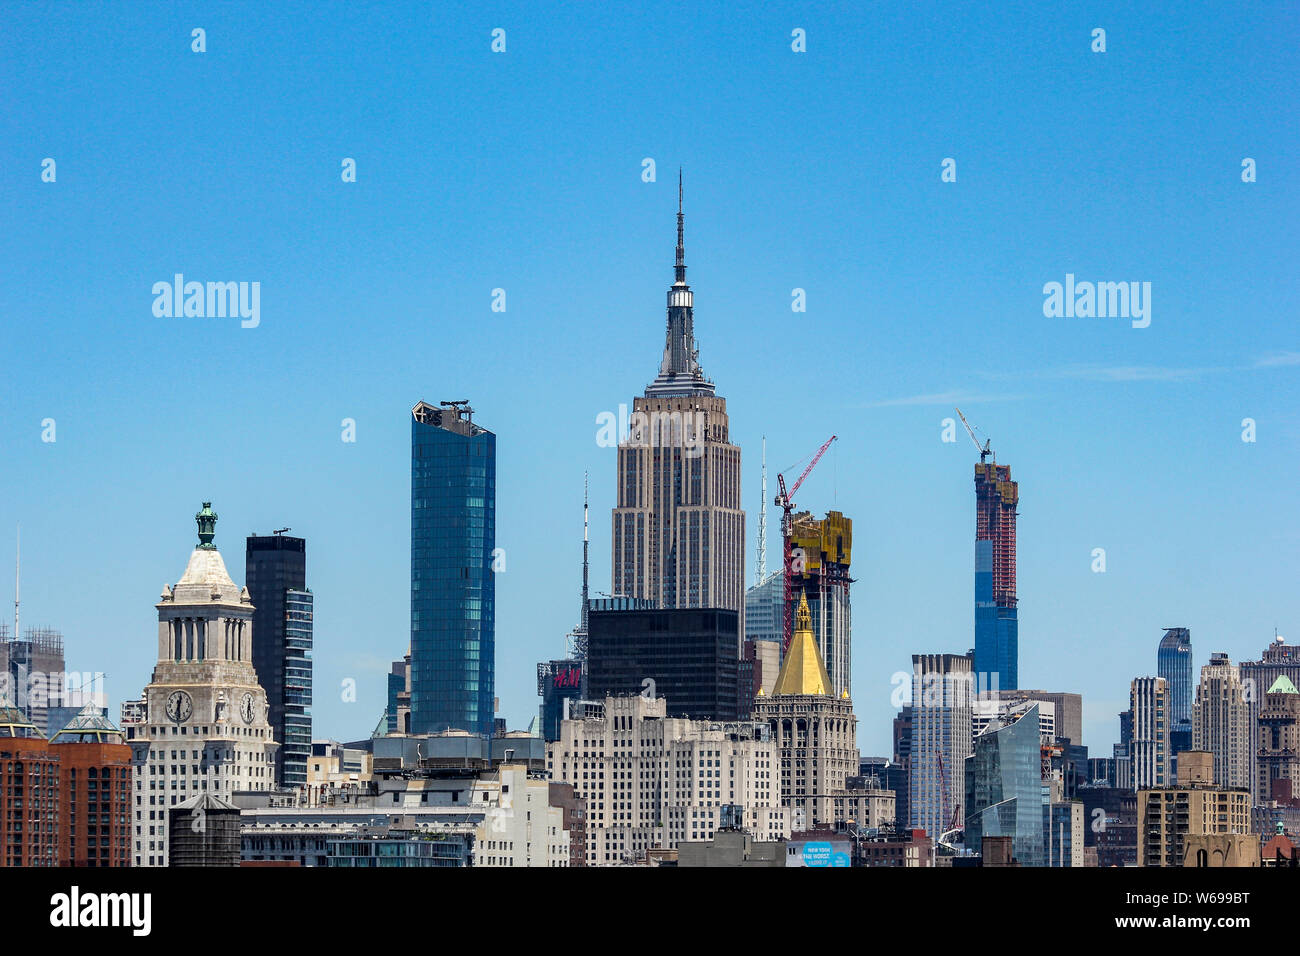 Una vista hacia el Empire State Building desde el Lower East Side de Manhattan, en Nueva York, Nueva York, Estados Unidos Foto de stock